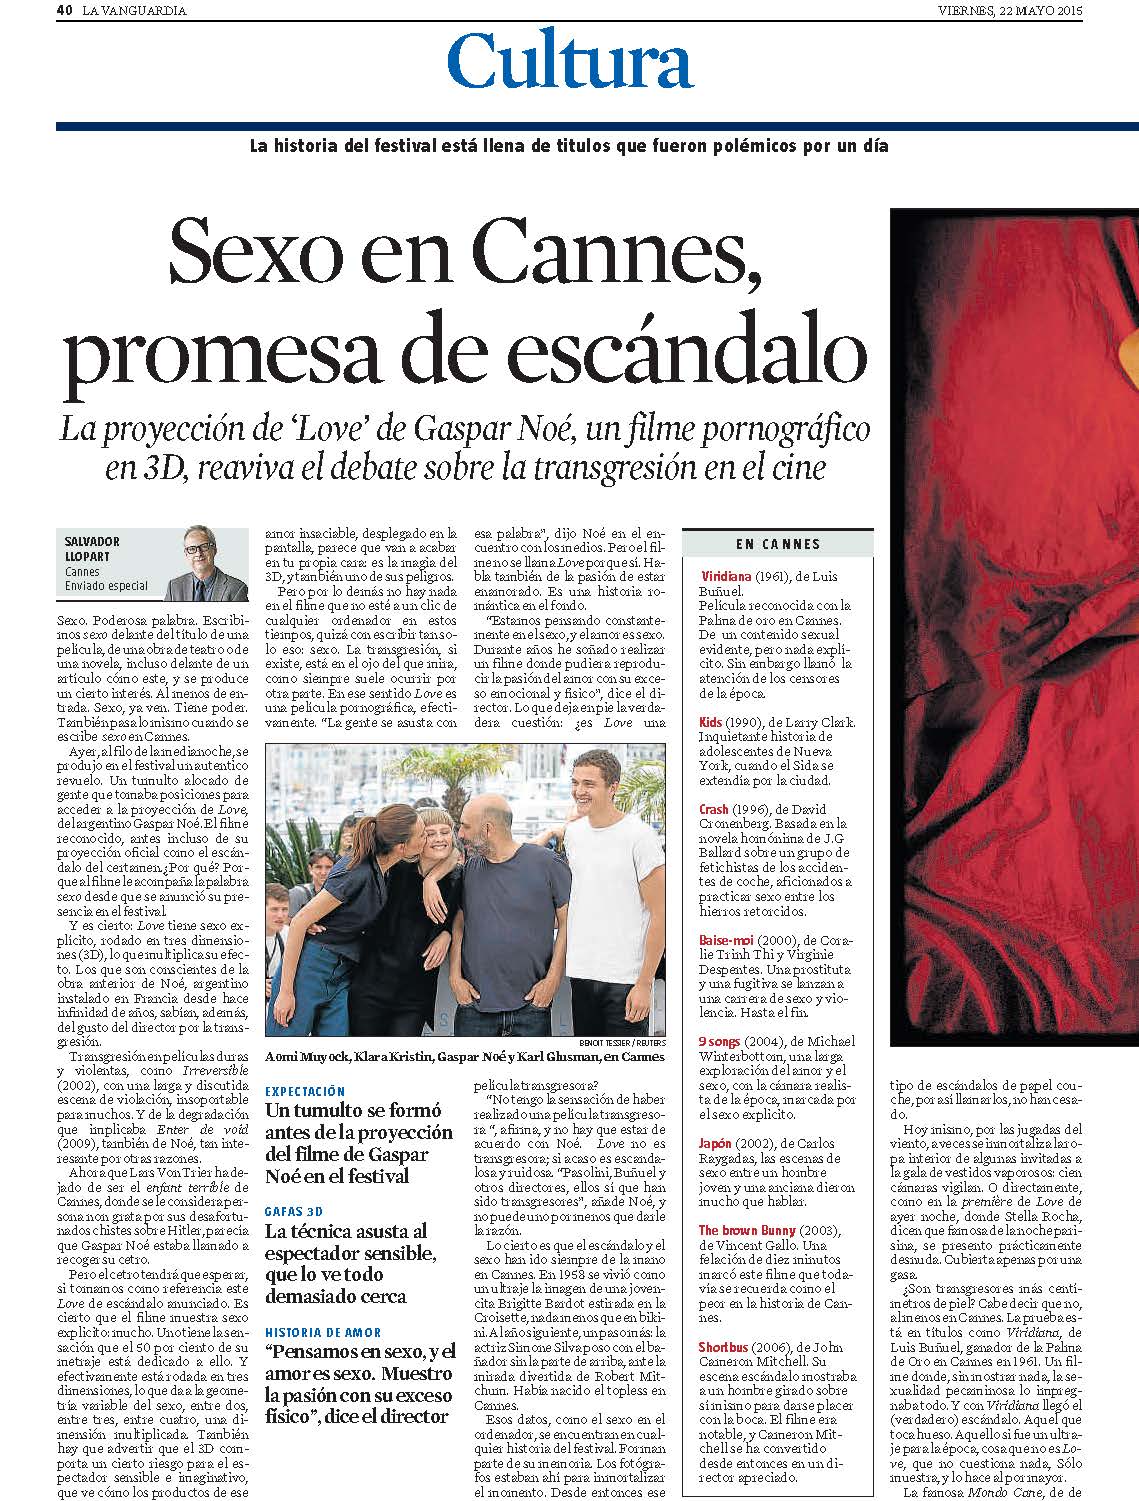 Sexo en Cannes, promesa de escándalo imagen